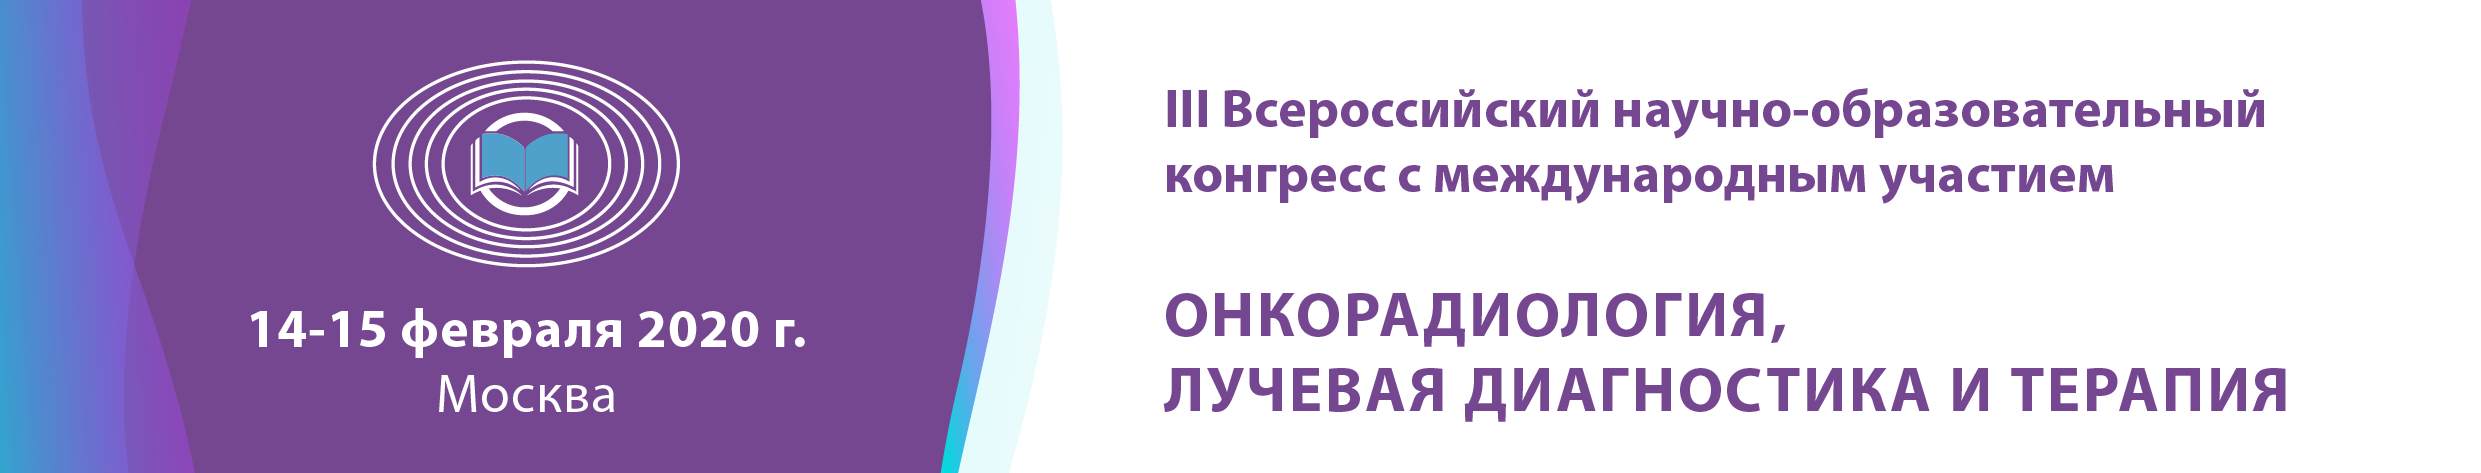 III Всероссийский научно-образовательный конгресс с международным участием «Онкорадиология, лучевая диагностика и терапия»